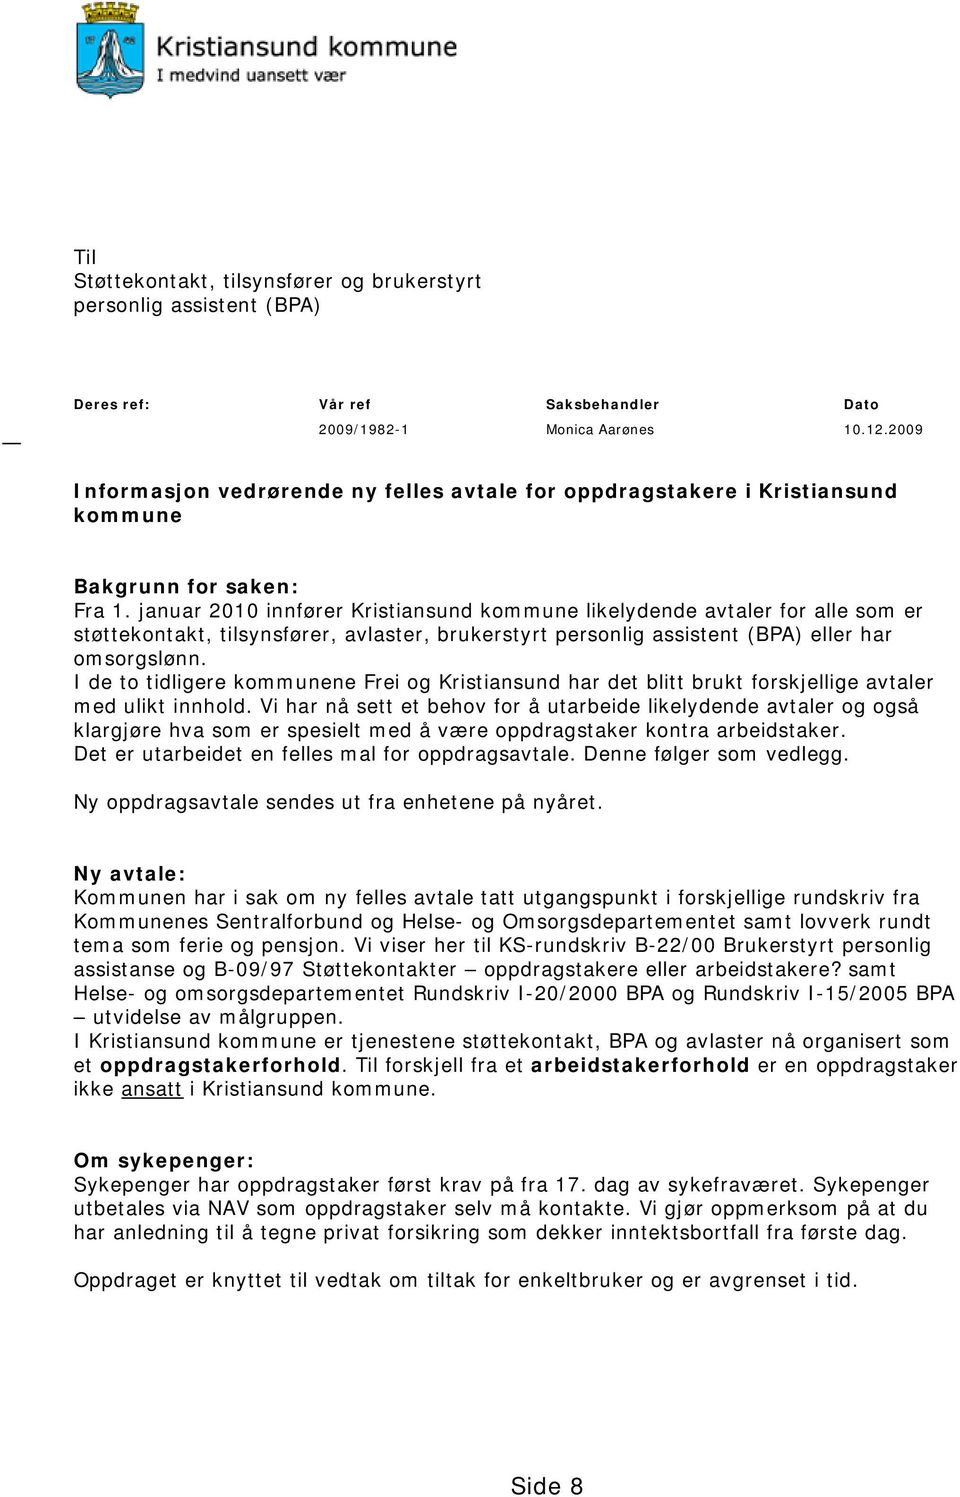 januar 2010 innfører Kristiansund kommune likelydende avtaler for alle som er støttekontakt, tilsynsfører, avlaster, brukerstyrt personlig assistent (BPA) eller har omsorgslønn.